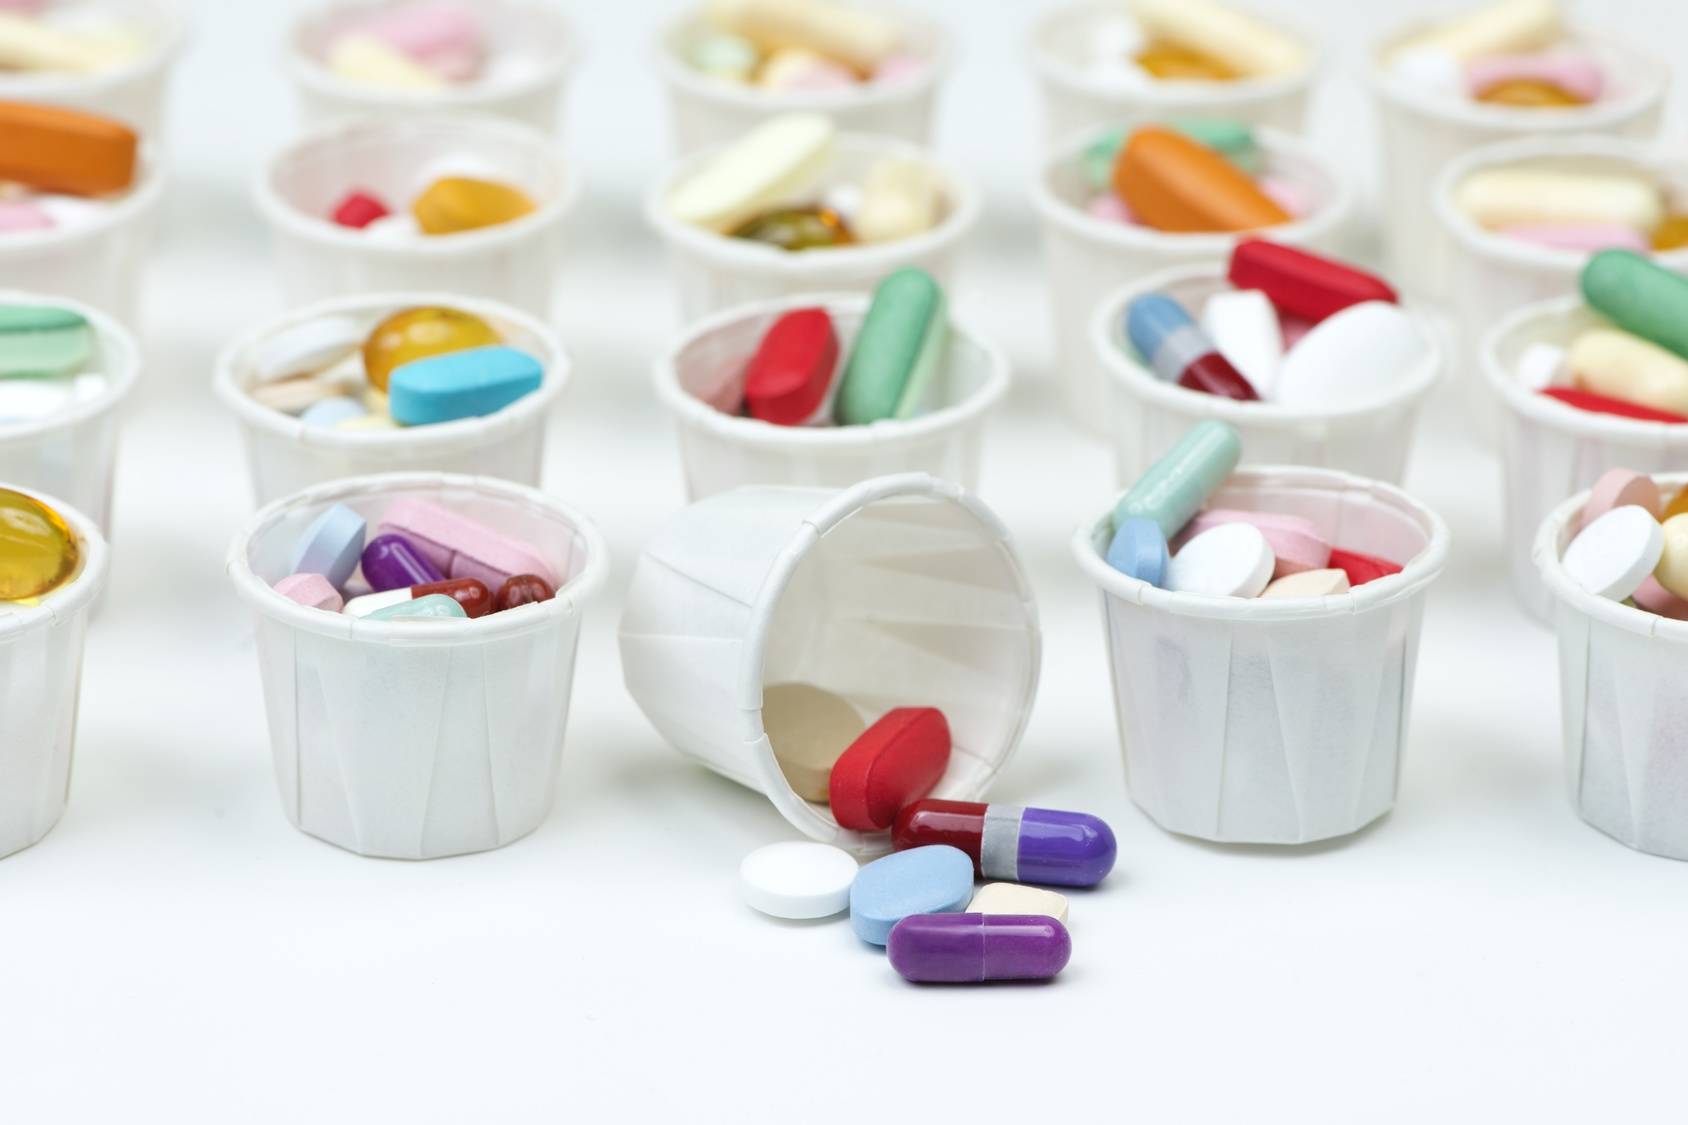 Antybiotyki - czemu przestają działać? Czym jest antybiotykooporność? Czy grozi nam epidemia superbakterii? Kolorowe pastylki w białych plastikowych kubeczkach medycznych, jeden z nich jest przewrócony i wysypały się z niego leki.